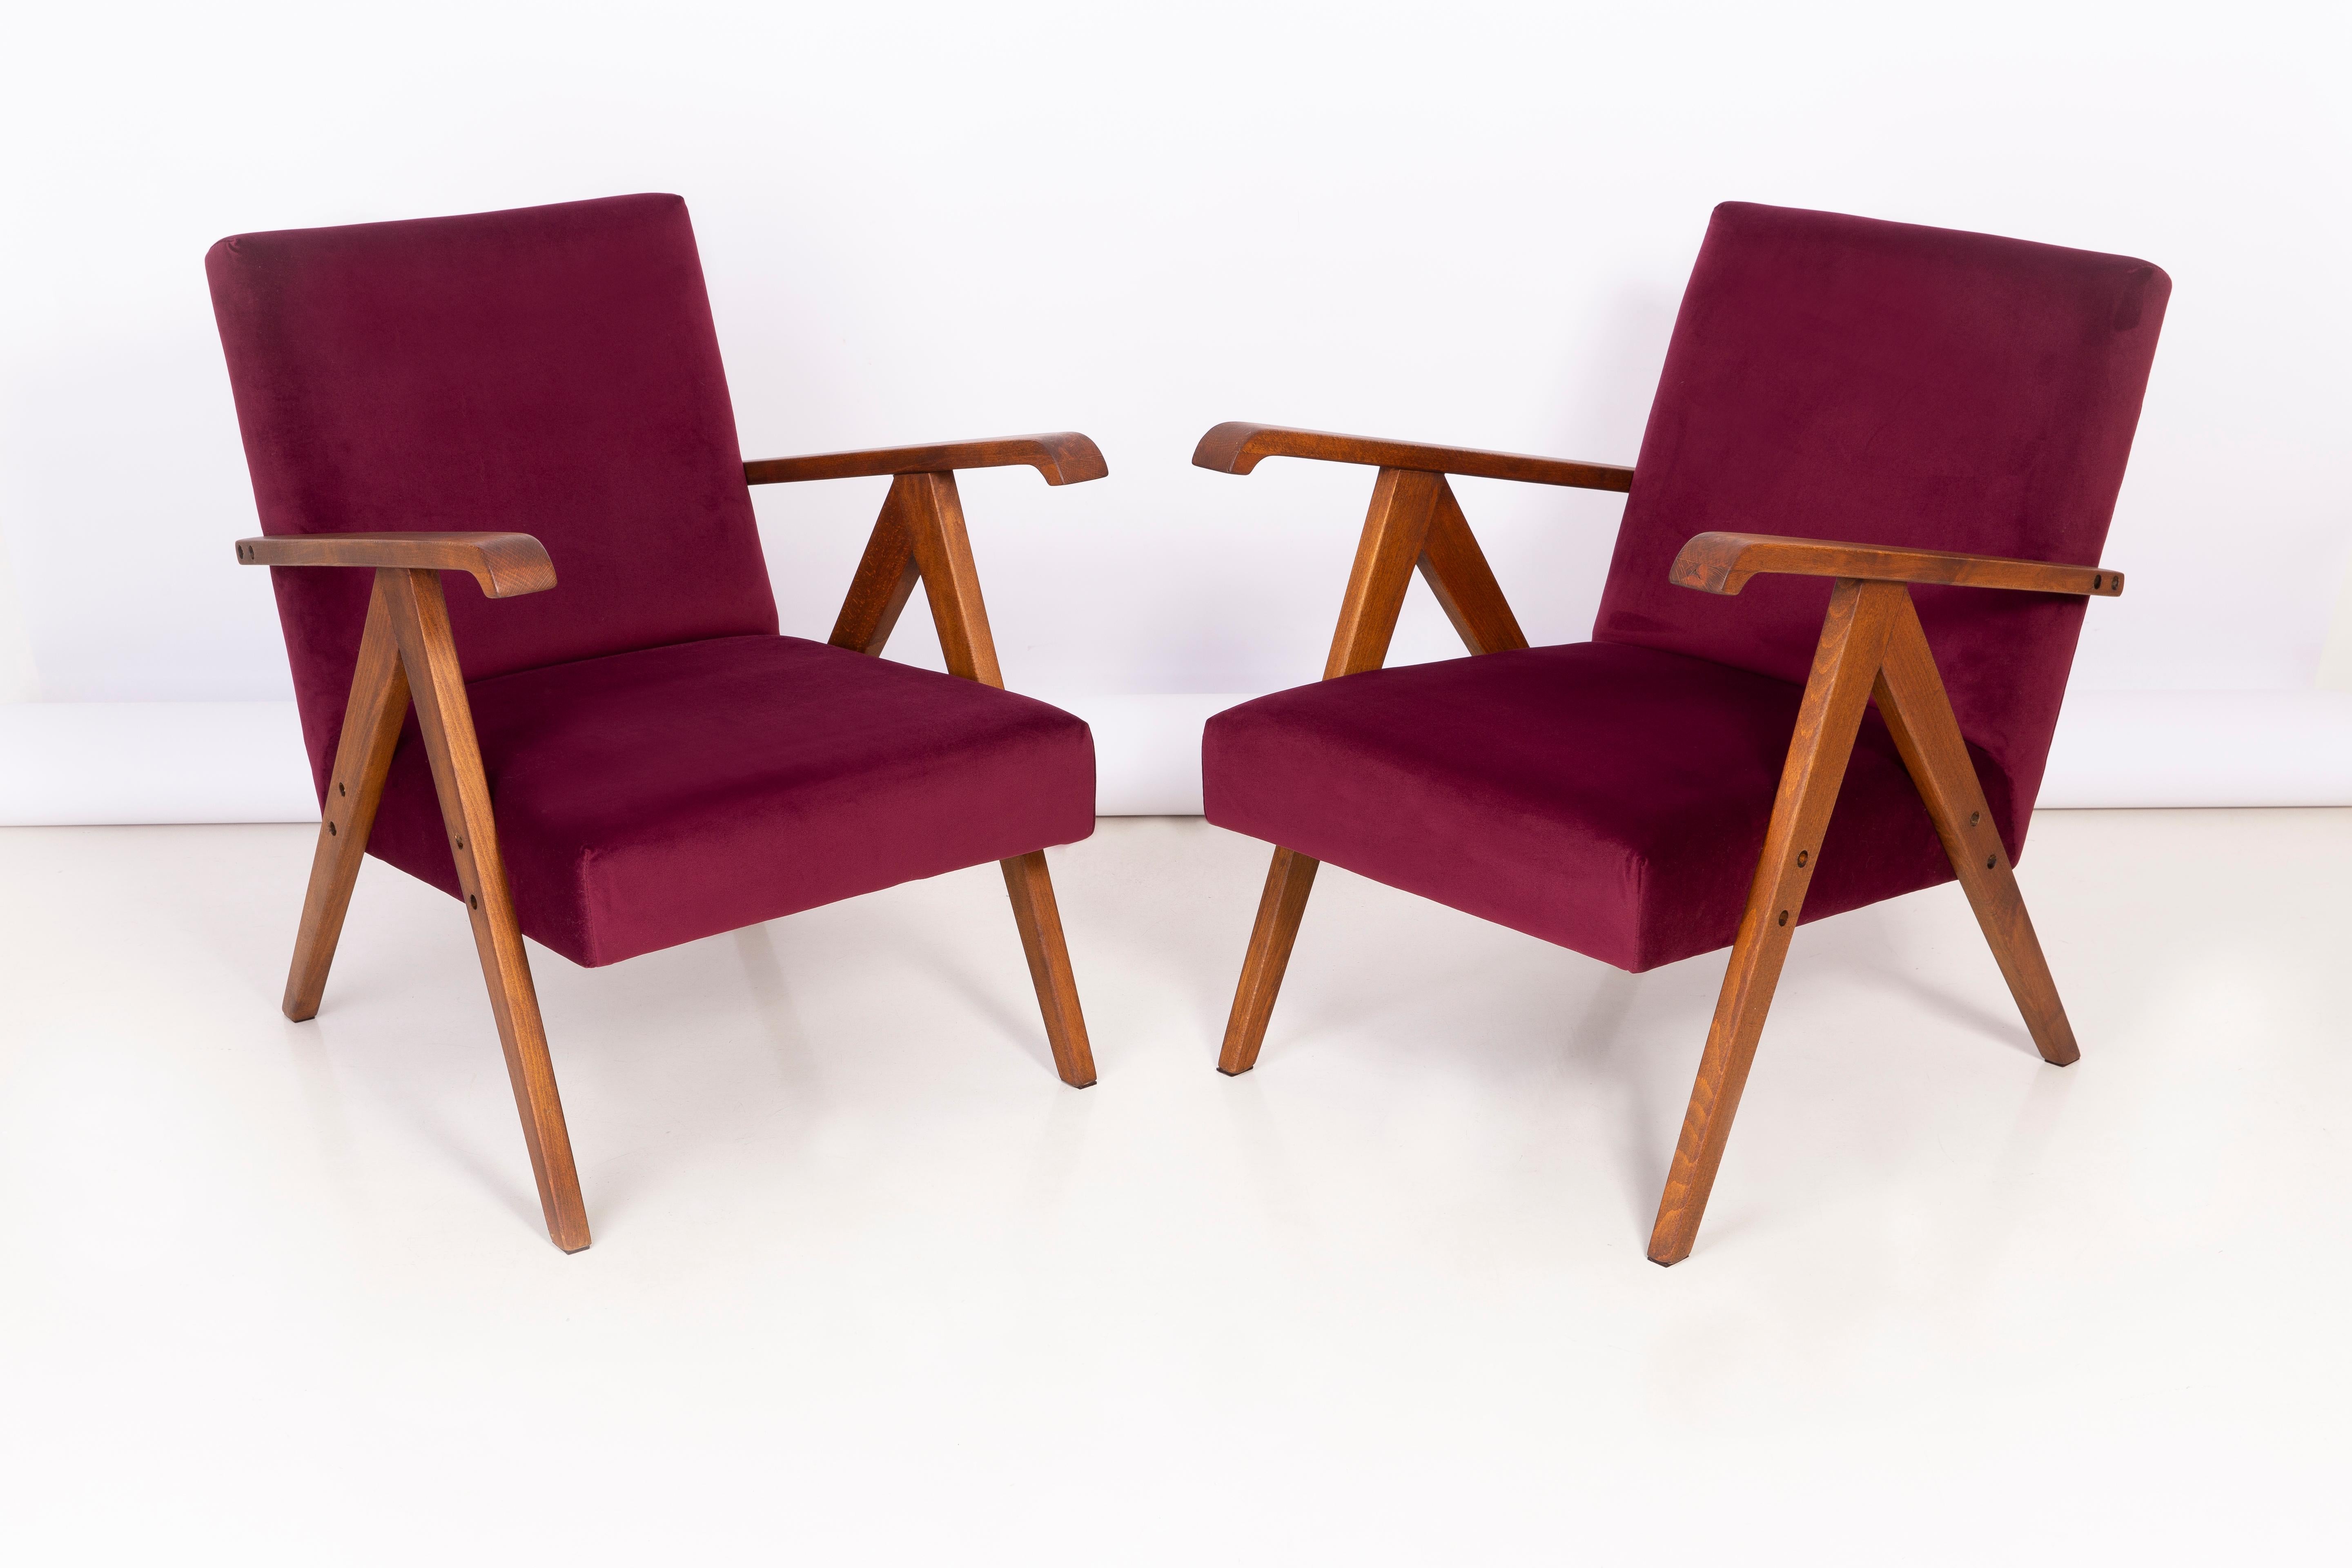 Un magnifique fauteuil restauré, conçu par Henryk Lis. Meubles après rénovation complète de la menuiserie et de la tapisserie d'ameublement. Le tissu qui recouvre le dossier et l'assise est un velours bordeaux de haute qualité (couleur 2932). Les